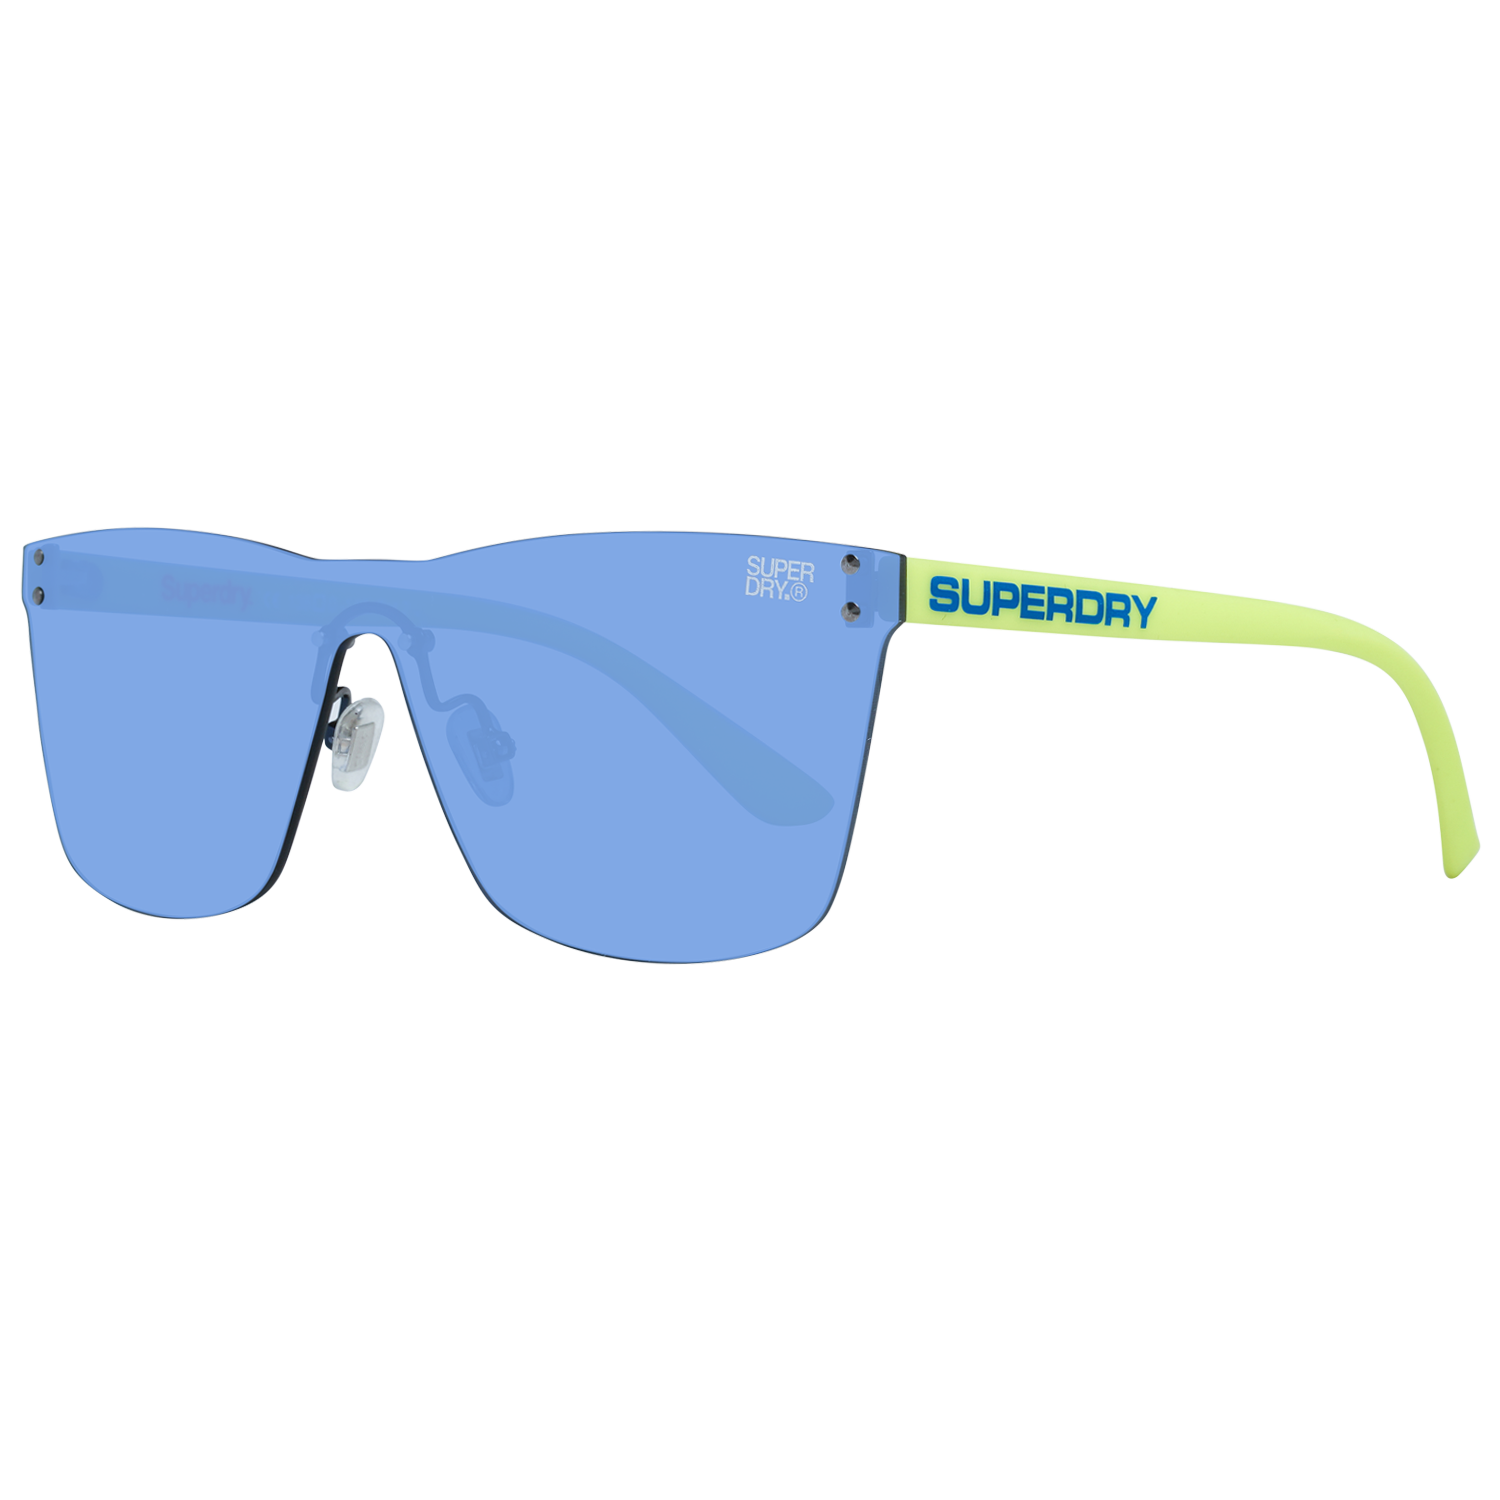 Superdry Sunglasses Superdry Sunglasses SDS Electroshock 105 13 Eyeglasses Eyewear UK USA Australia 